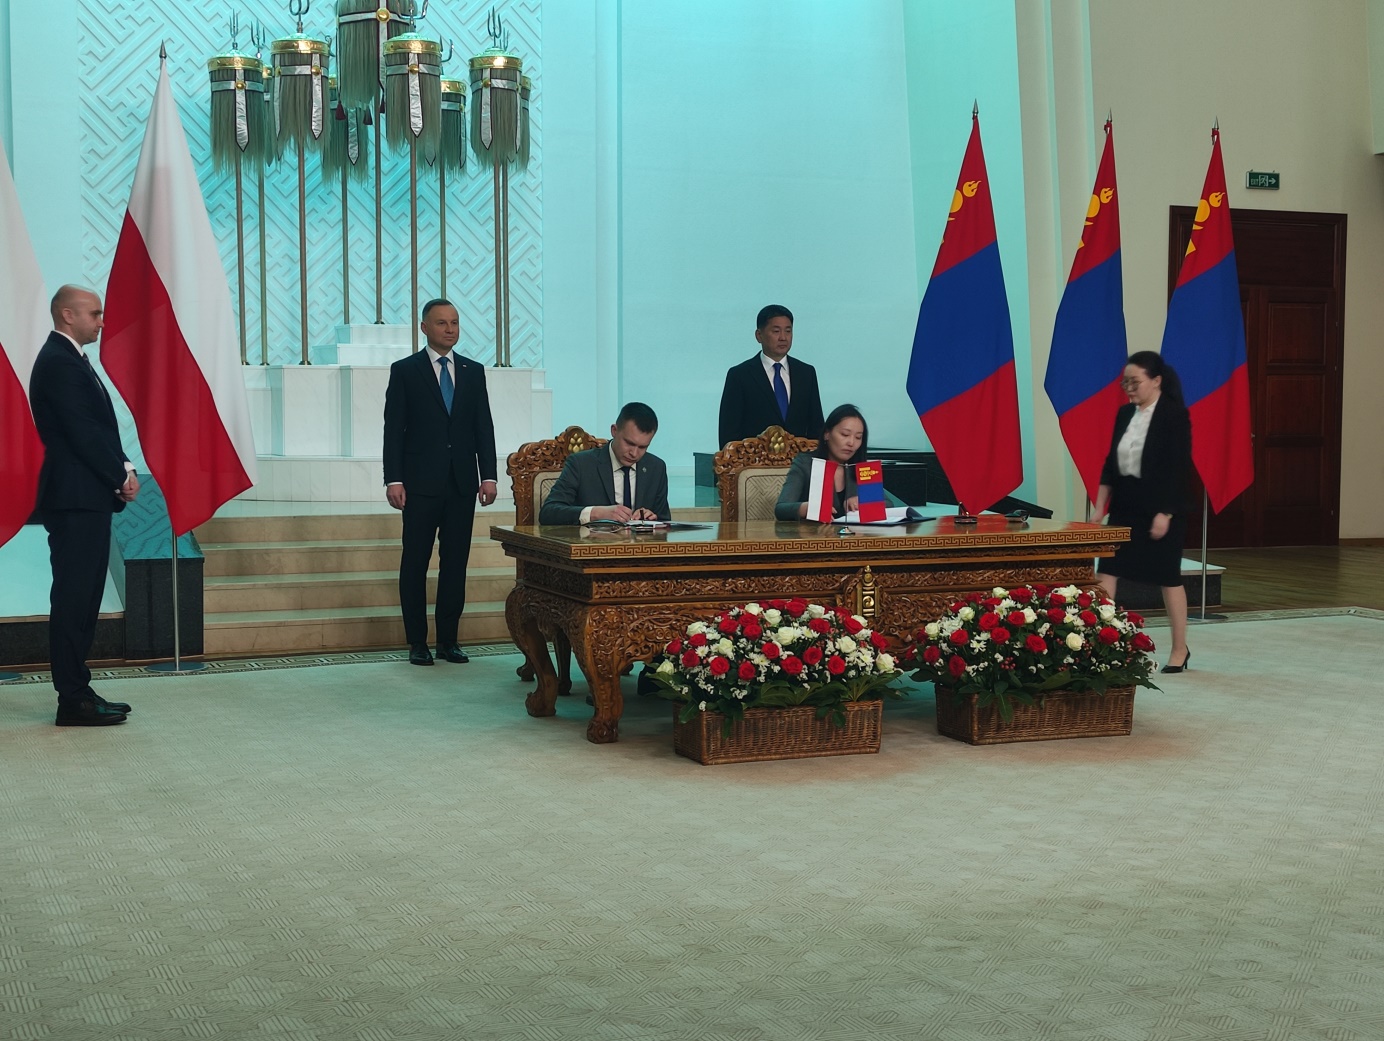 podpisanie porozumienia pomiędzy Polską a Mongolią